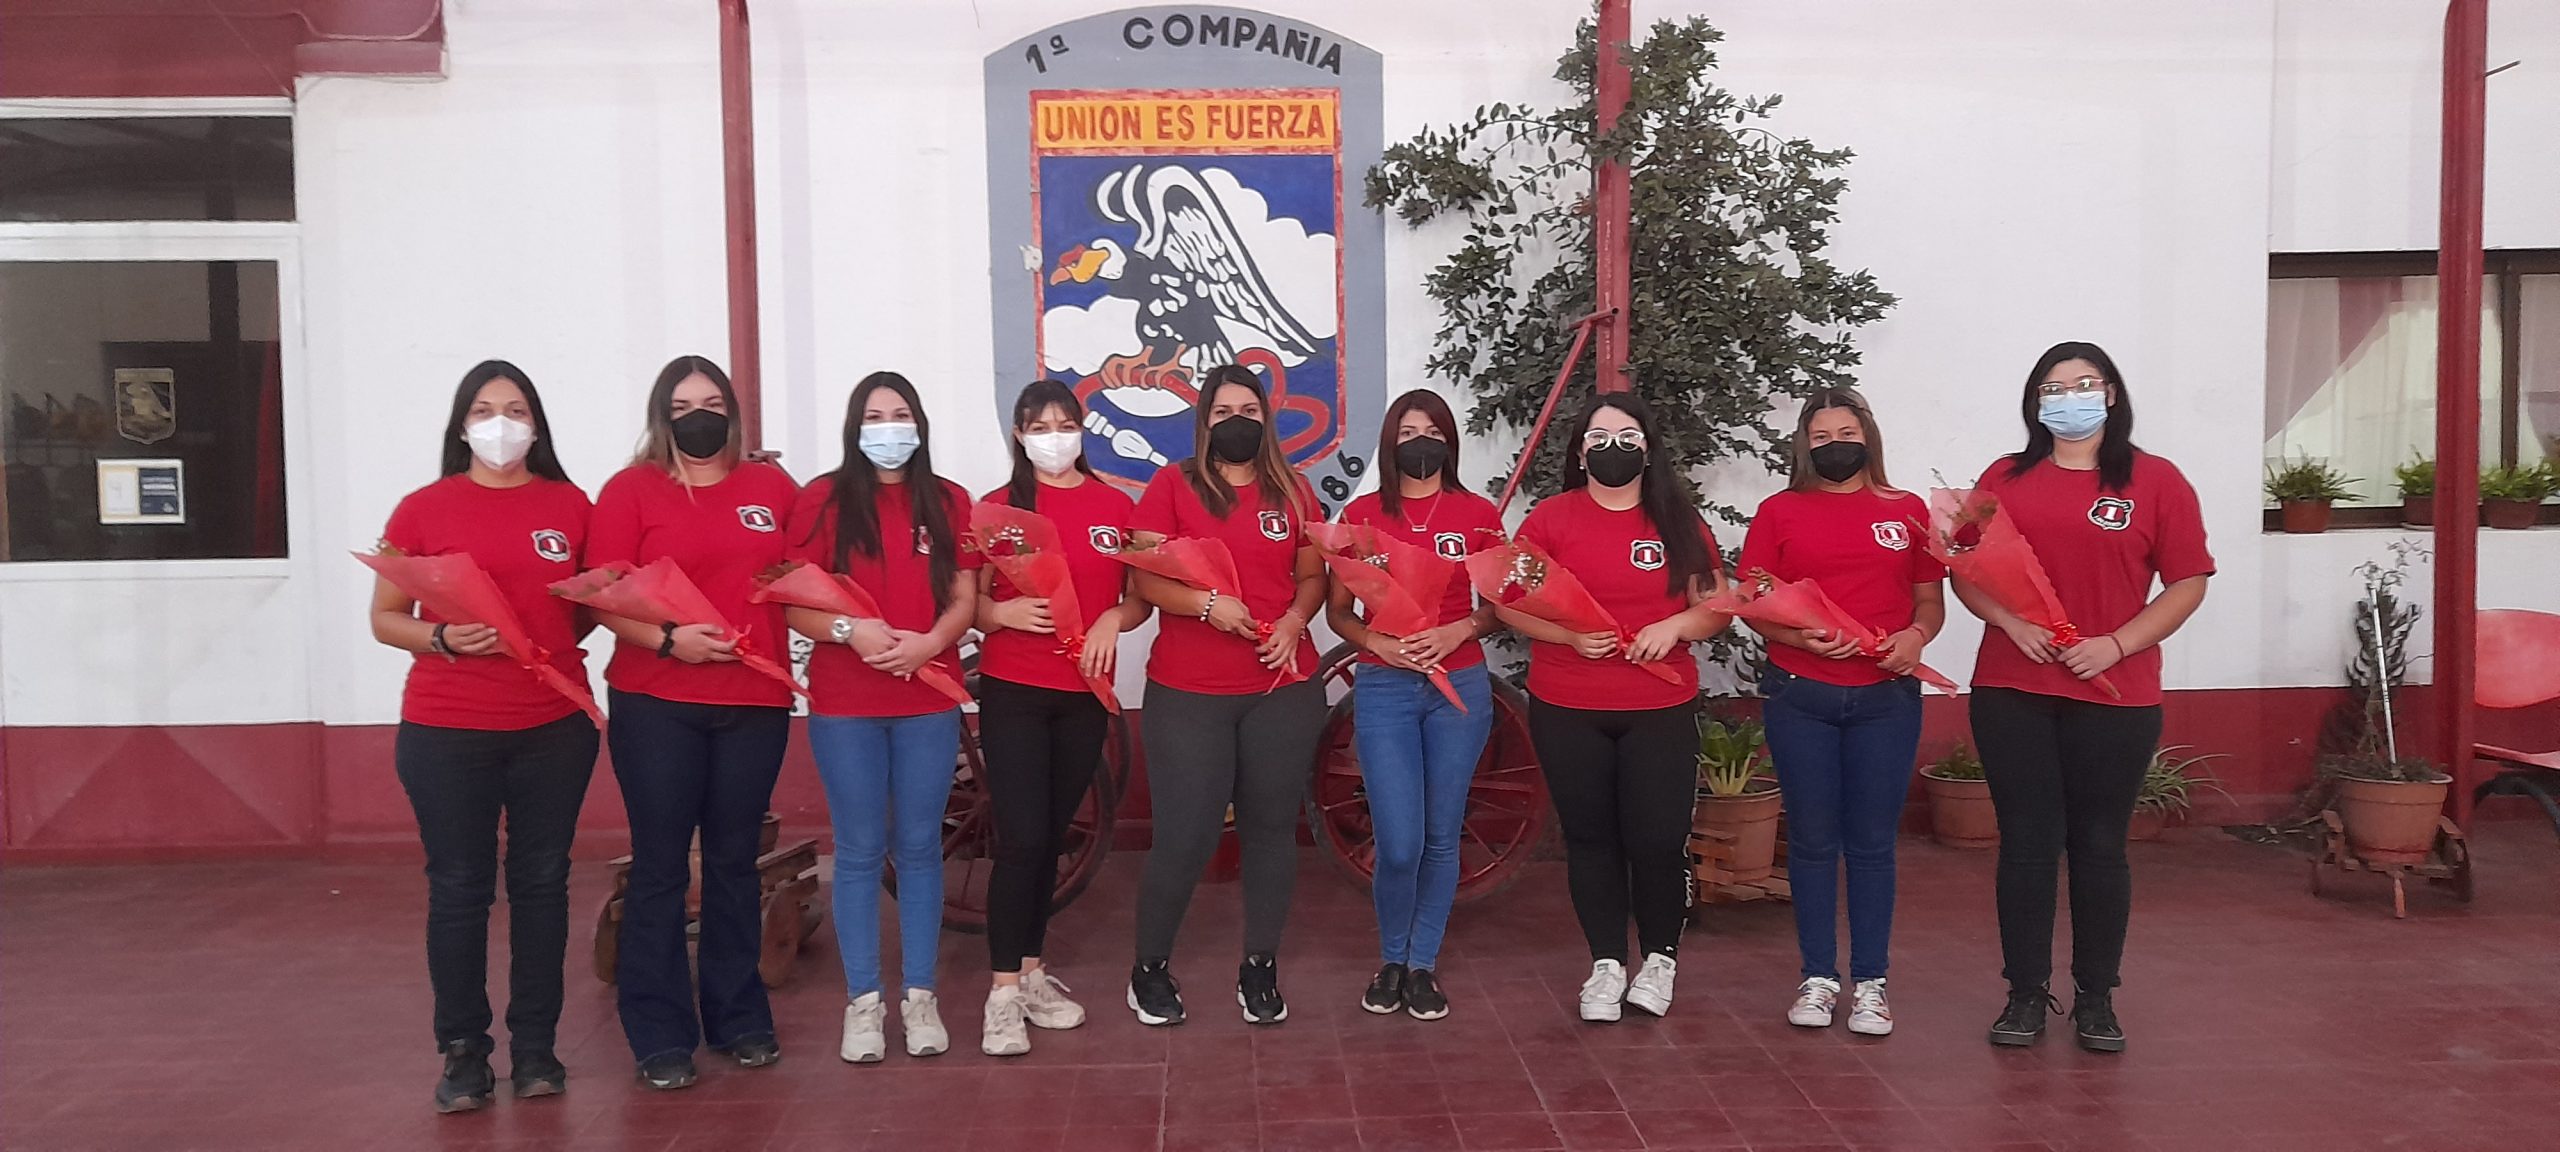 LOS ANDES: Bomba Andes conmemora el día de la mujer con sus voluntarias